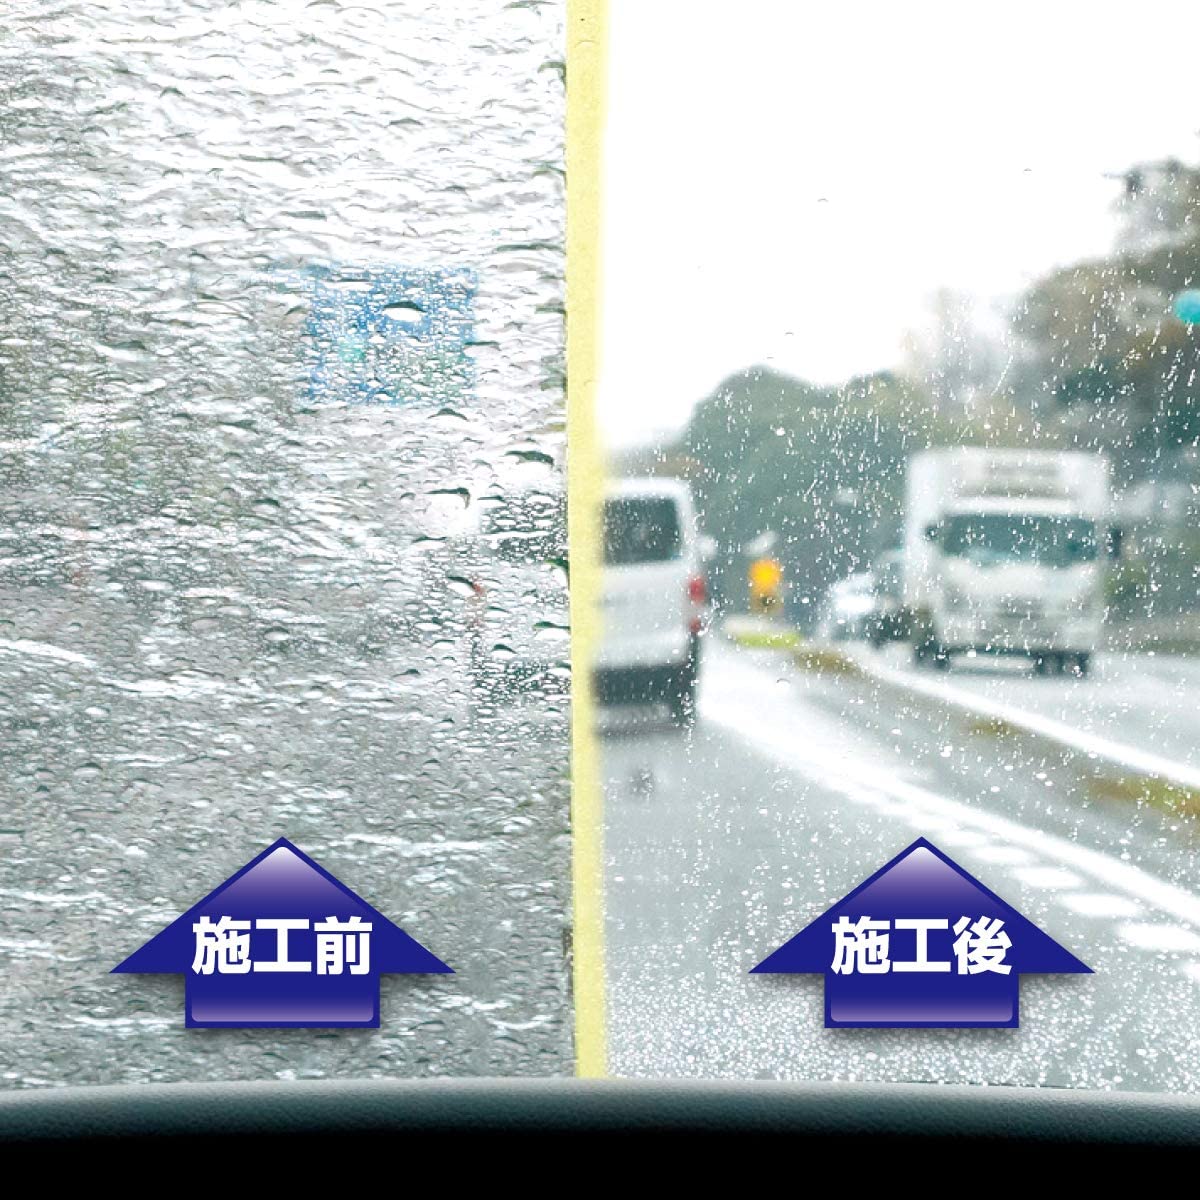 Japan SurLuster "Rain Repellent" Zero Window Coat (1 year) (Made in Japan)